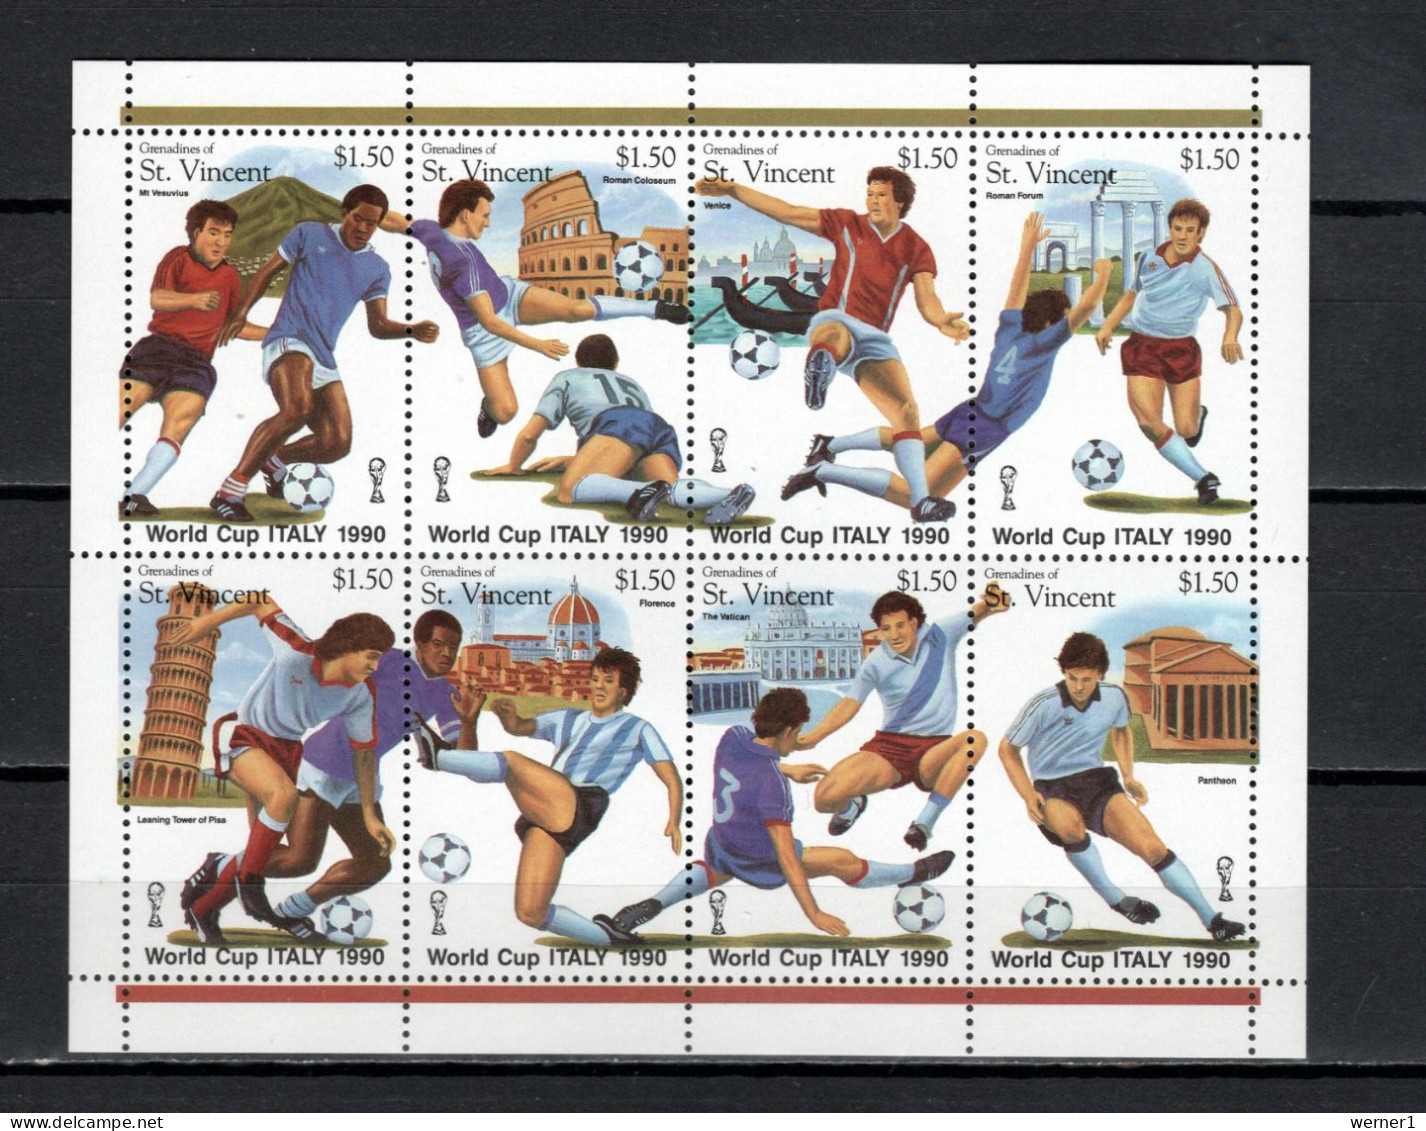 St. Vincent - Grenadines 1989 Football Soccer World Cup Sheetlet MNH - 1990 – Italië